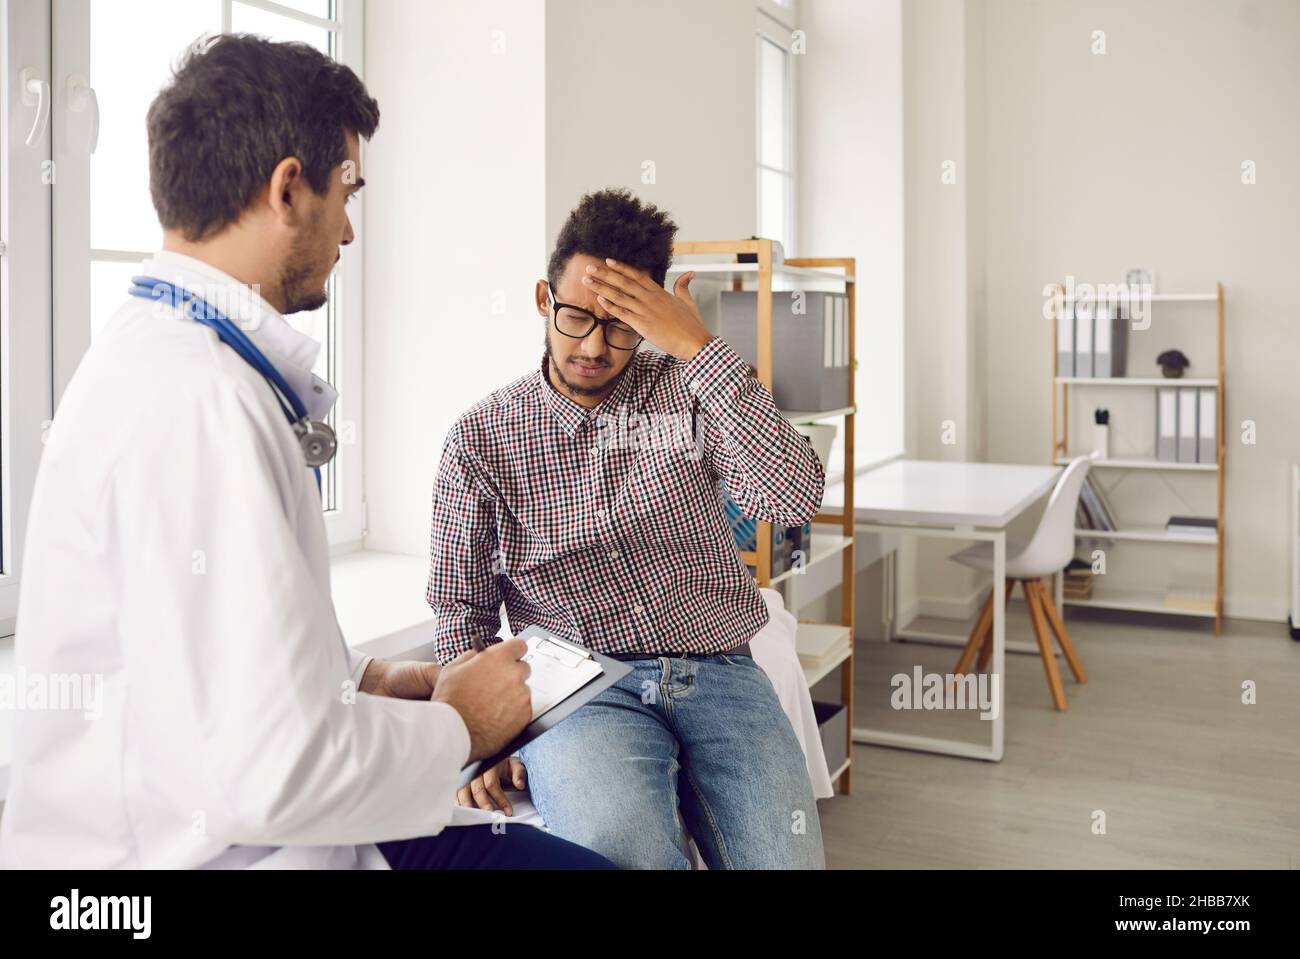 Un homme malsain souffre de maux de tête consulter un médecin Banque D'Images